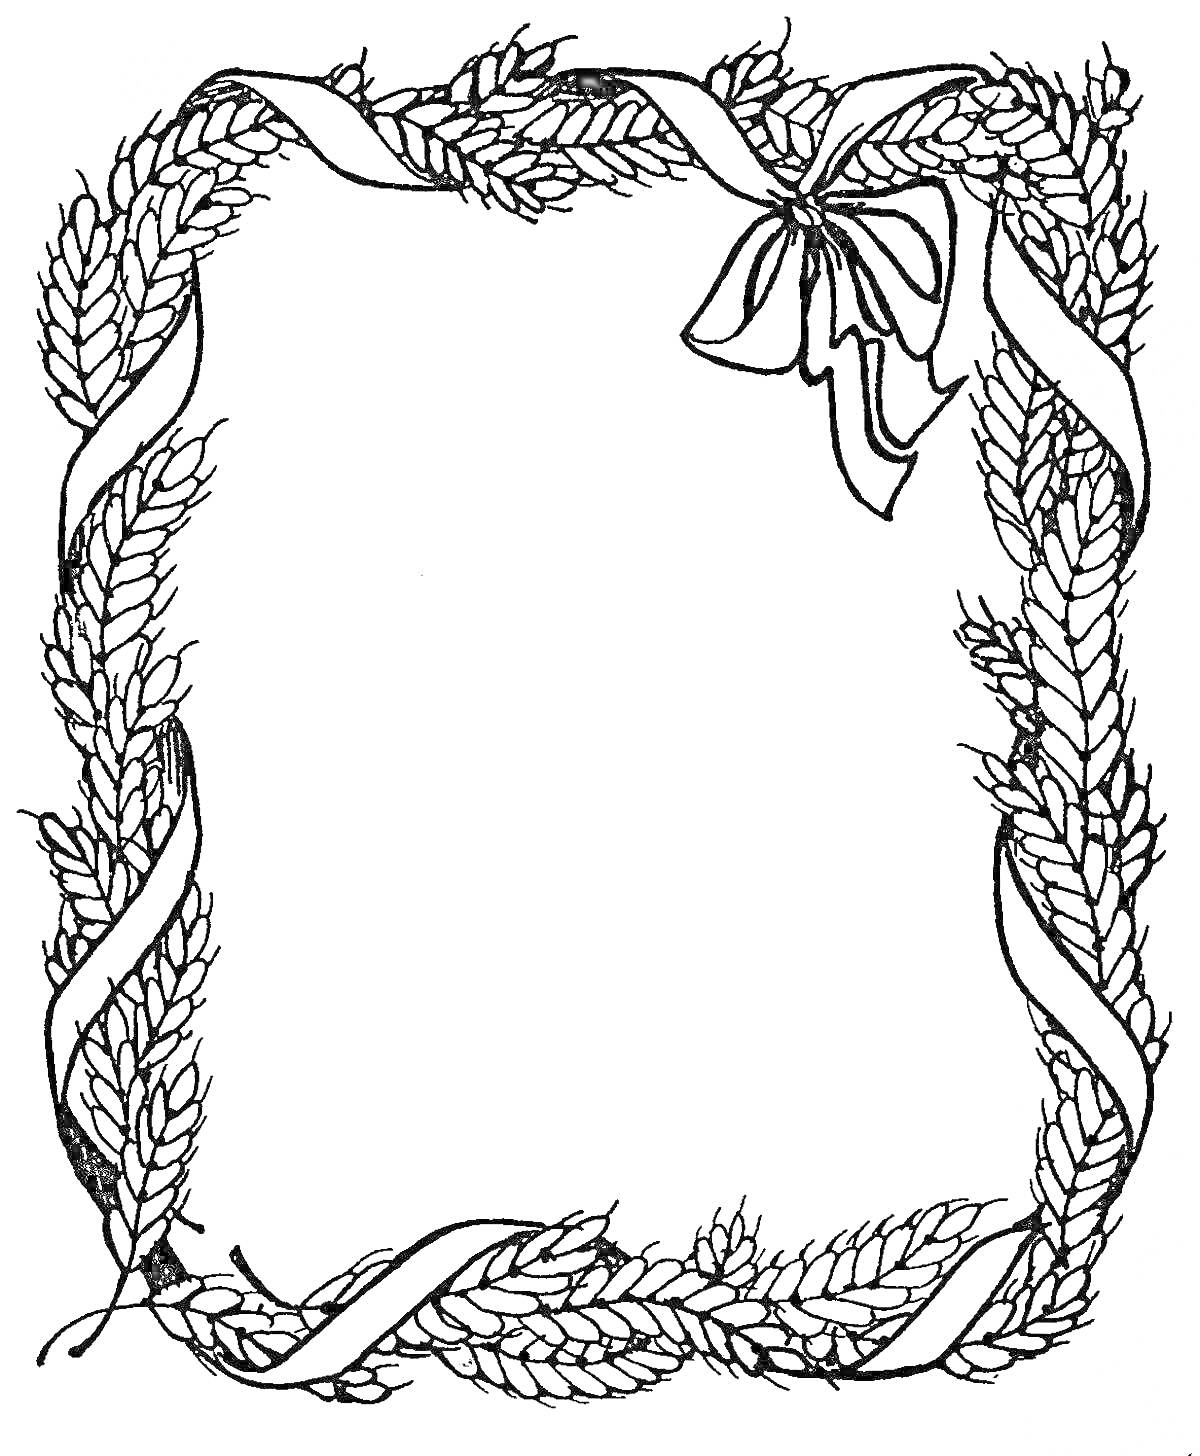 Раскраска Георгиевская ленточка и пшеничные колосья, обрамляющие пустую рамку